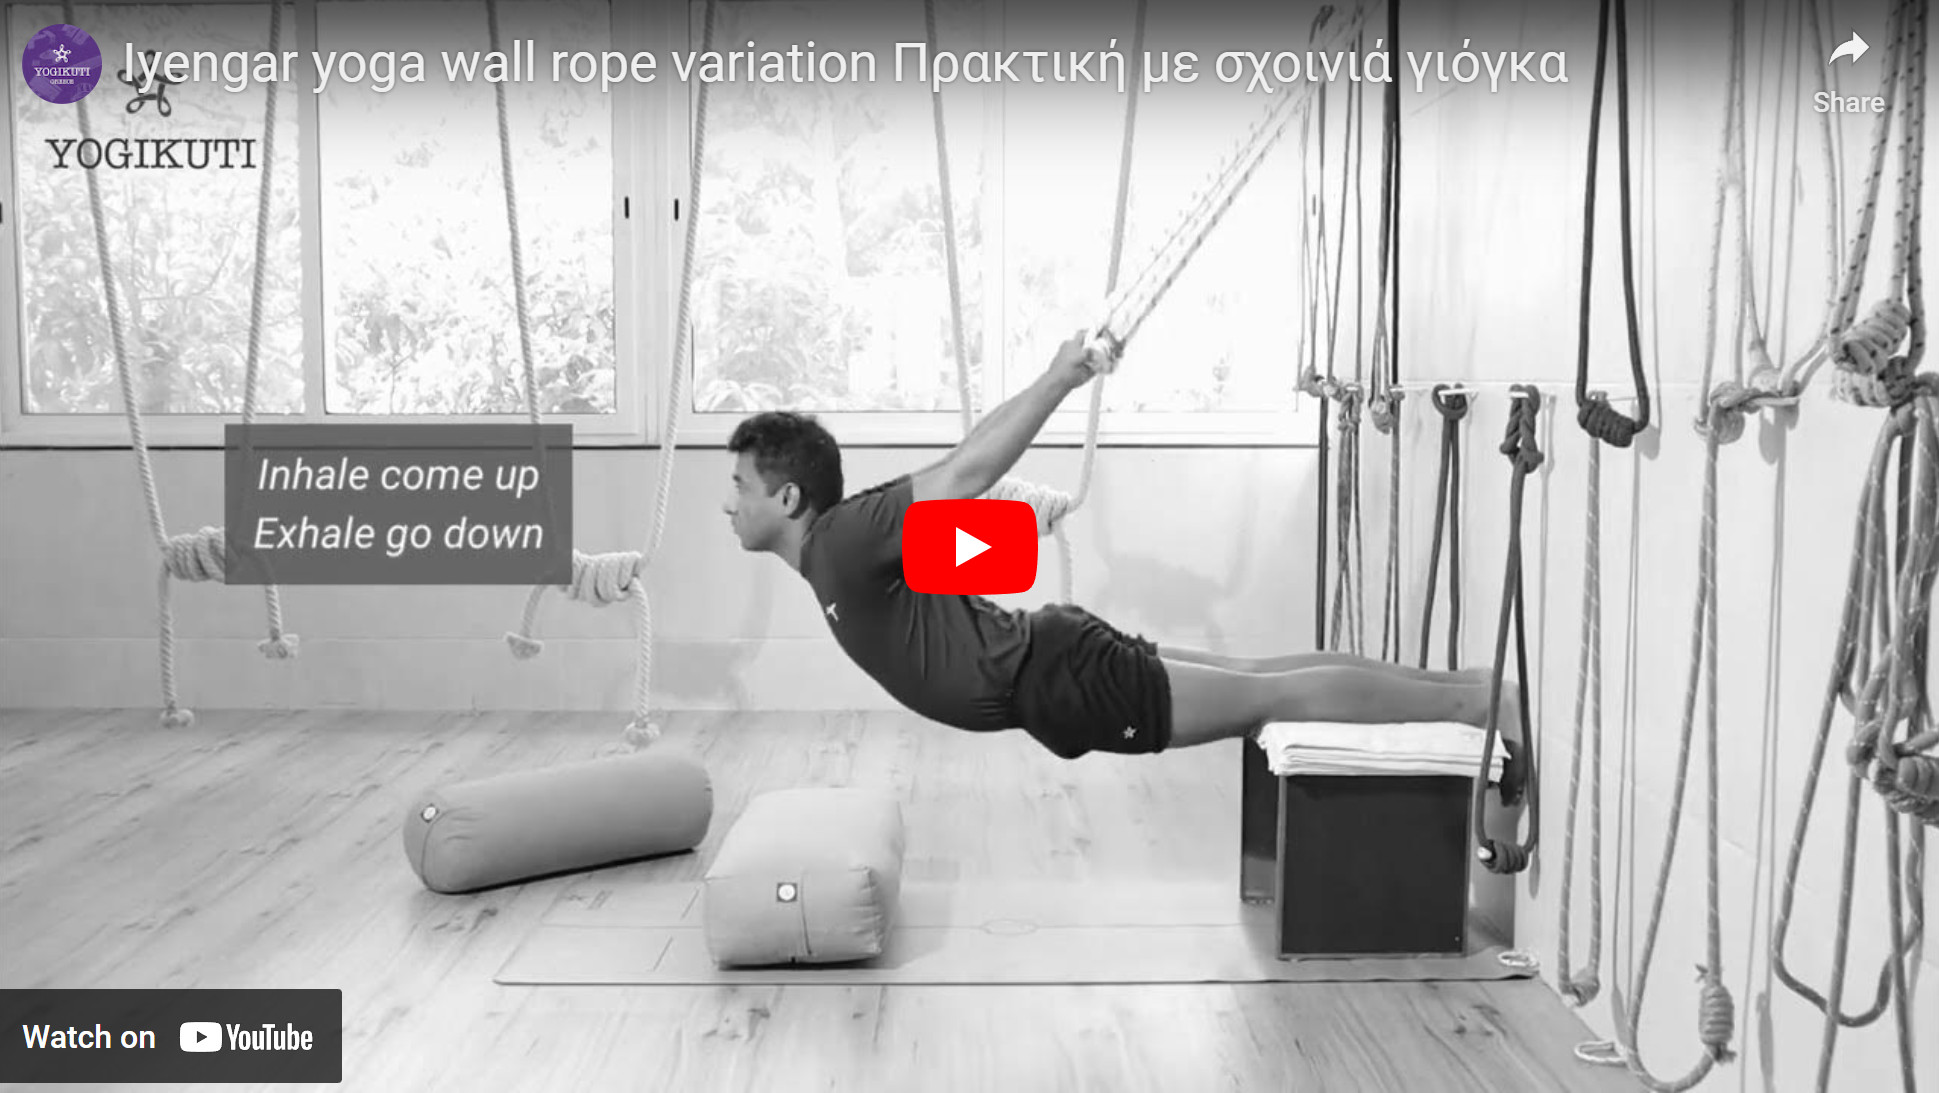 Πρακτική γιόγκα με σχοινιά Yogikuti, yoga wall ropes